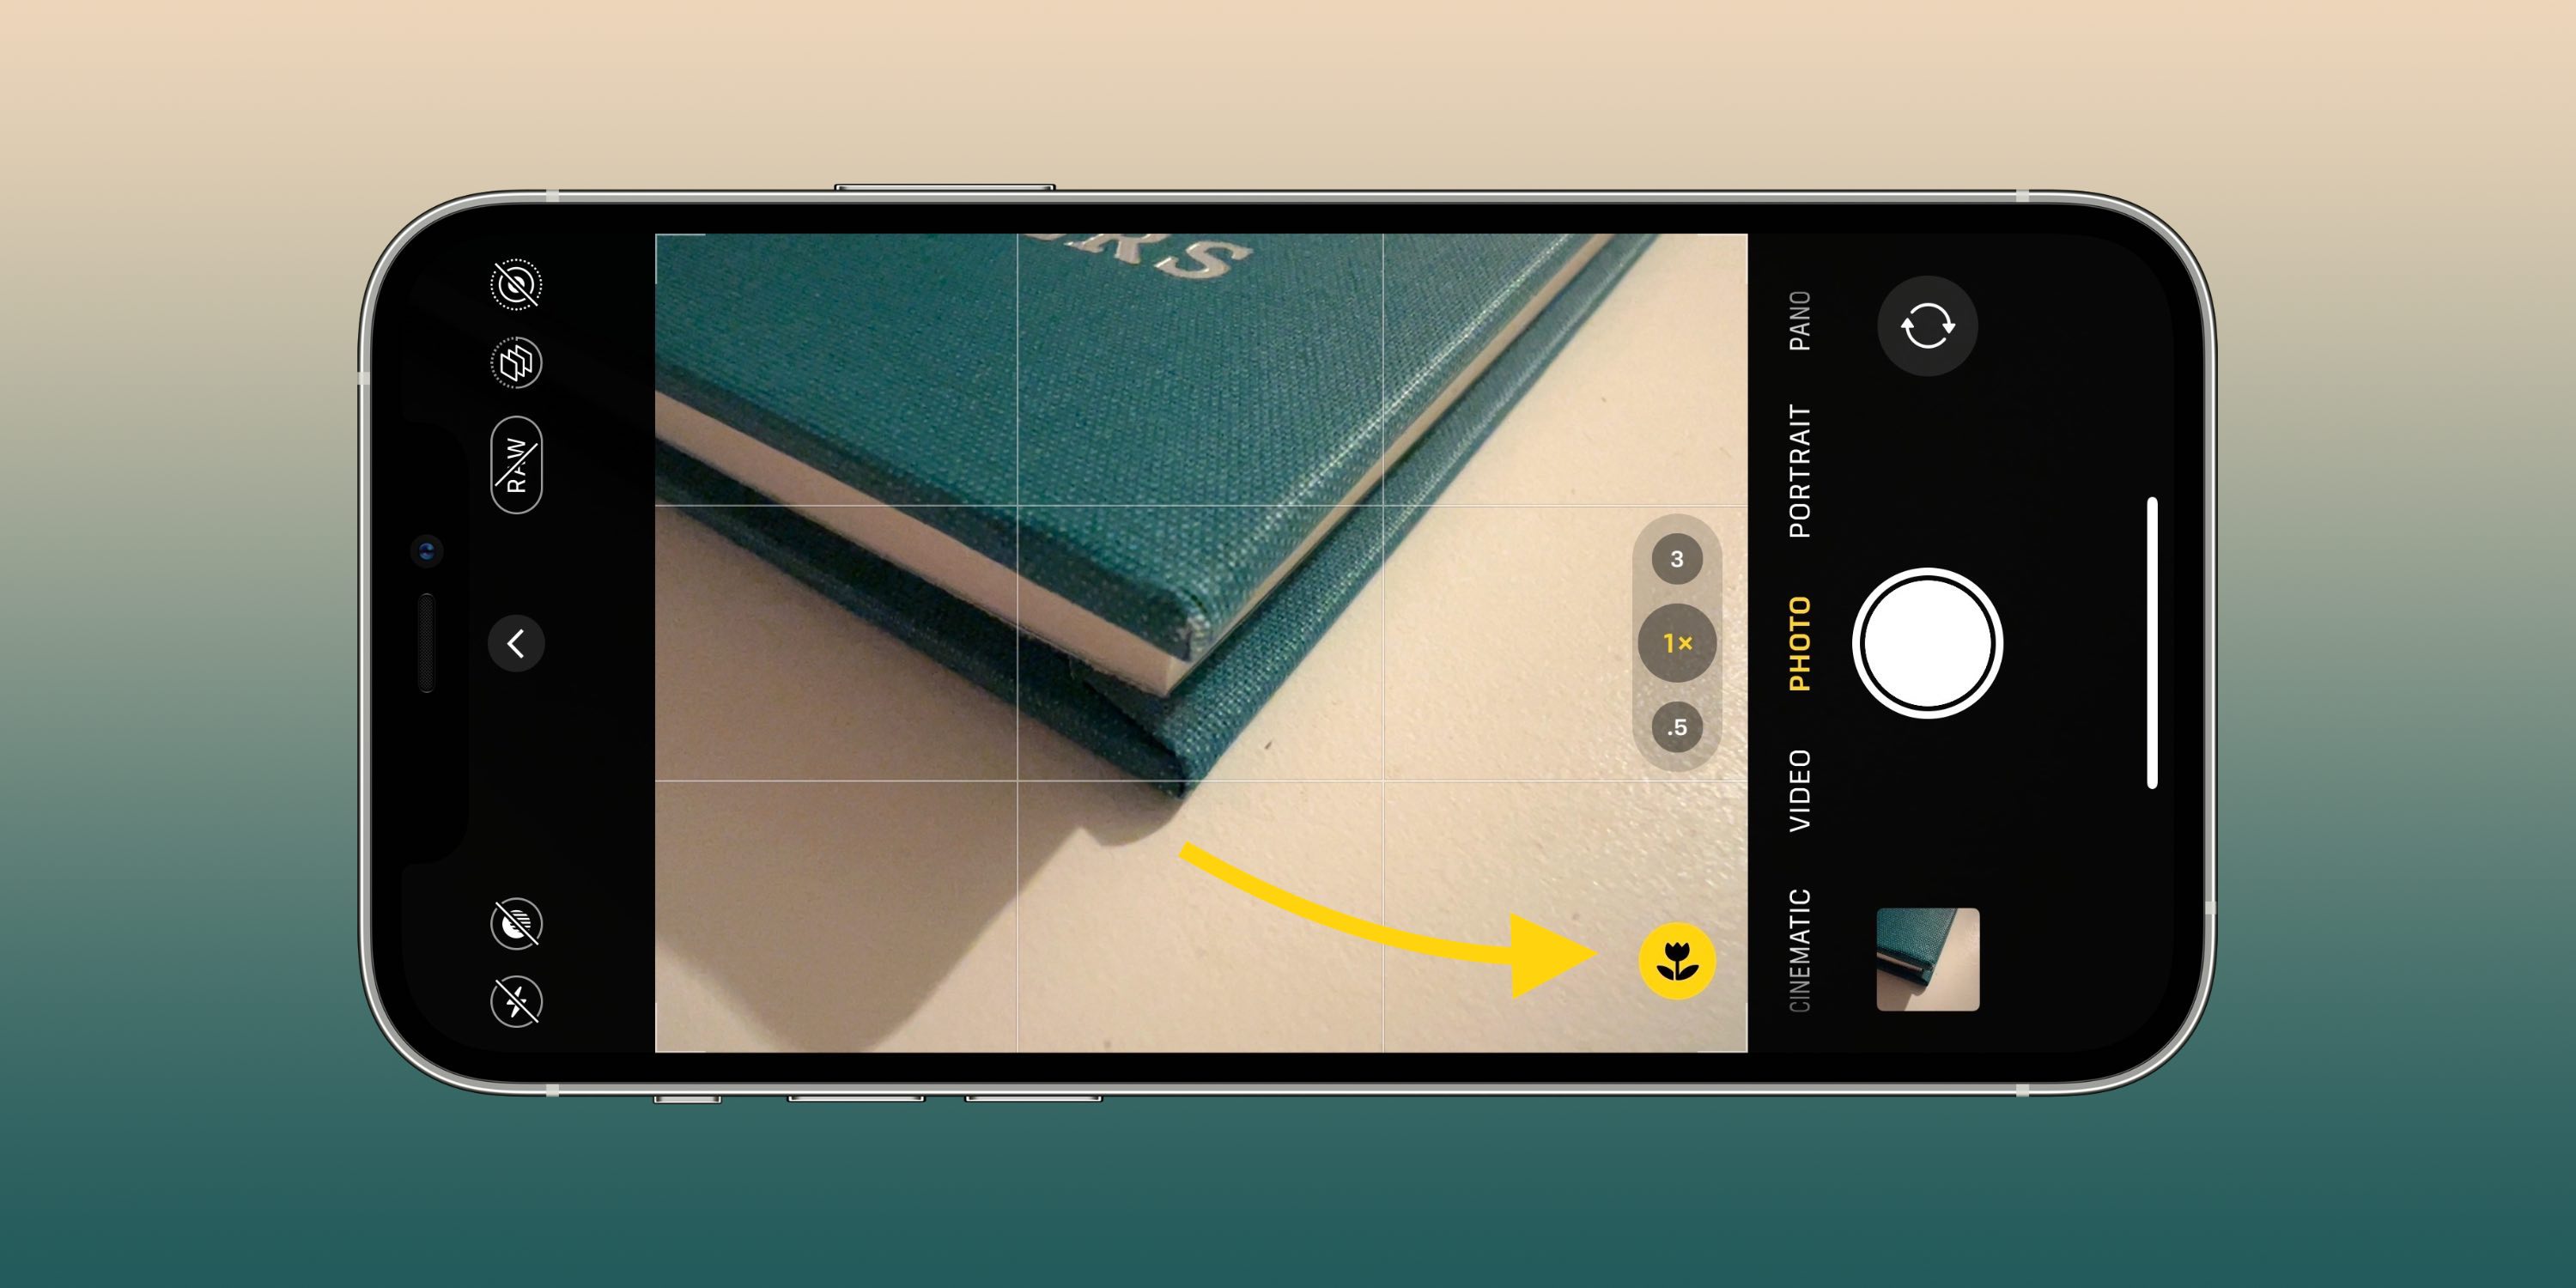 يمكن أن تساعدك إعدادات الكاميرا هذه على التقاط صور ومقاطع فيديو أفضل على جهاز iPhone الخاص بك